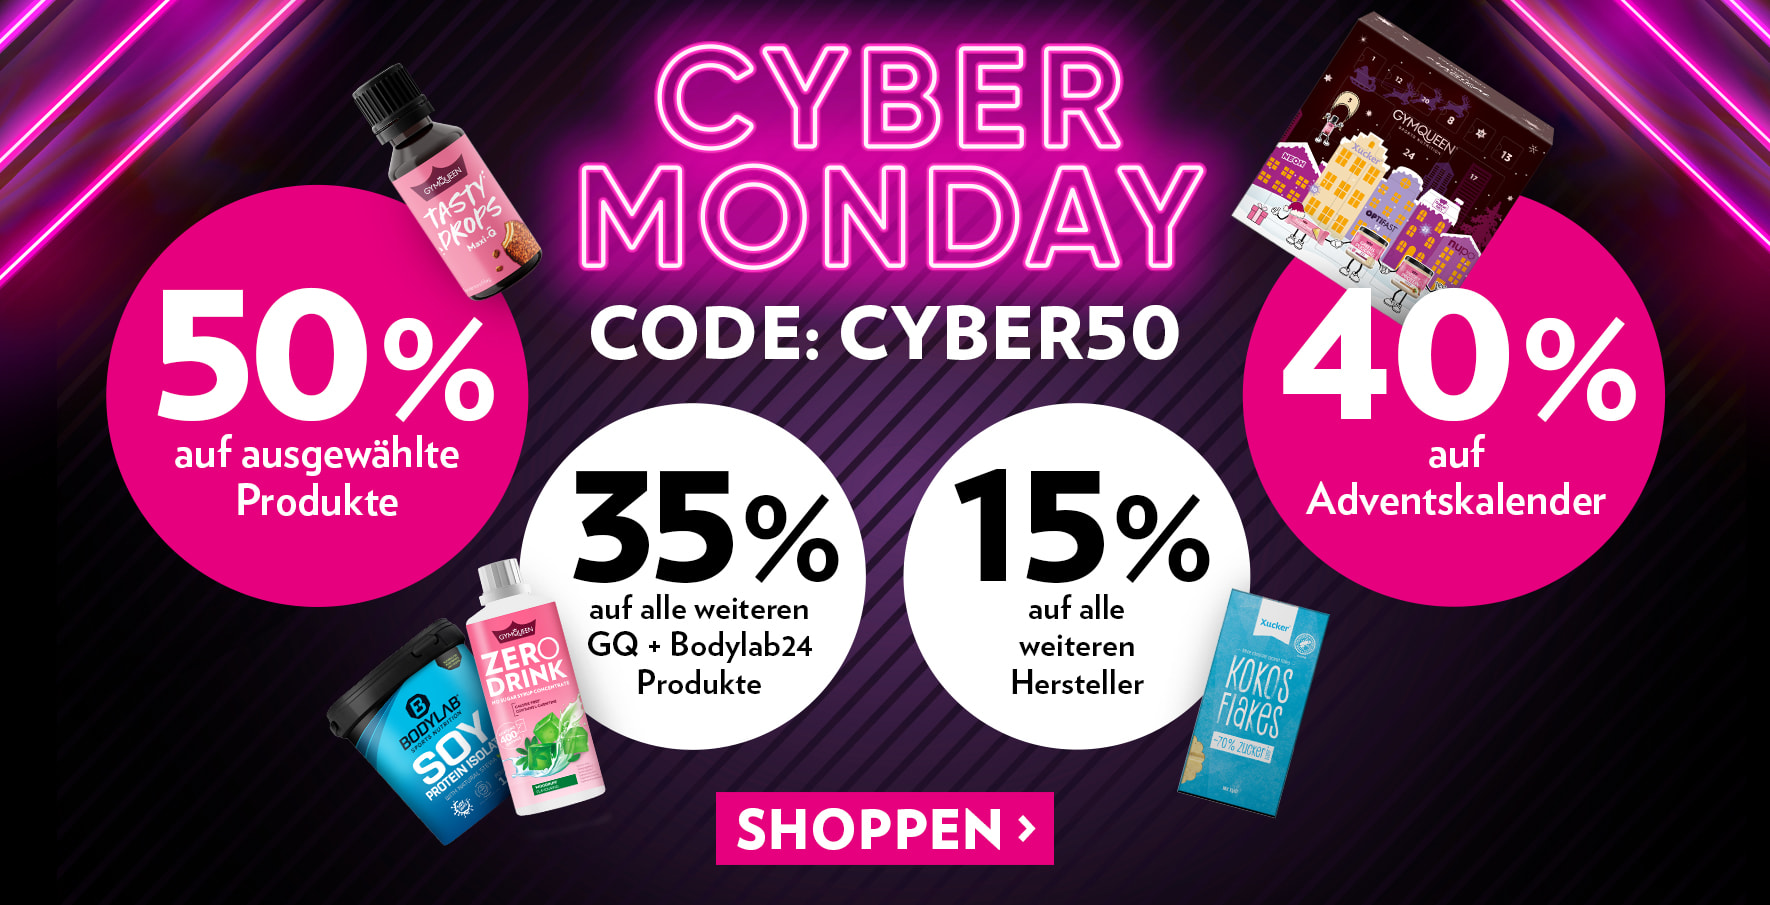 Cyber Monday Deal: Sichere dir bis zu 50% auf alle Produkt im Shop - Code: CYBER50